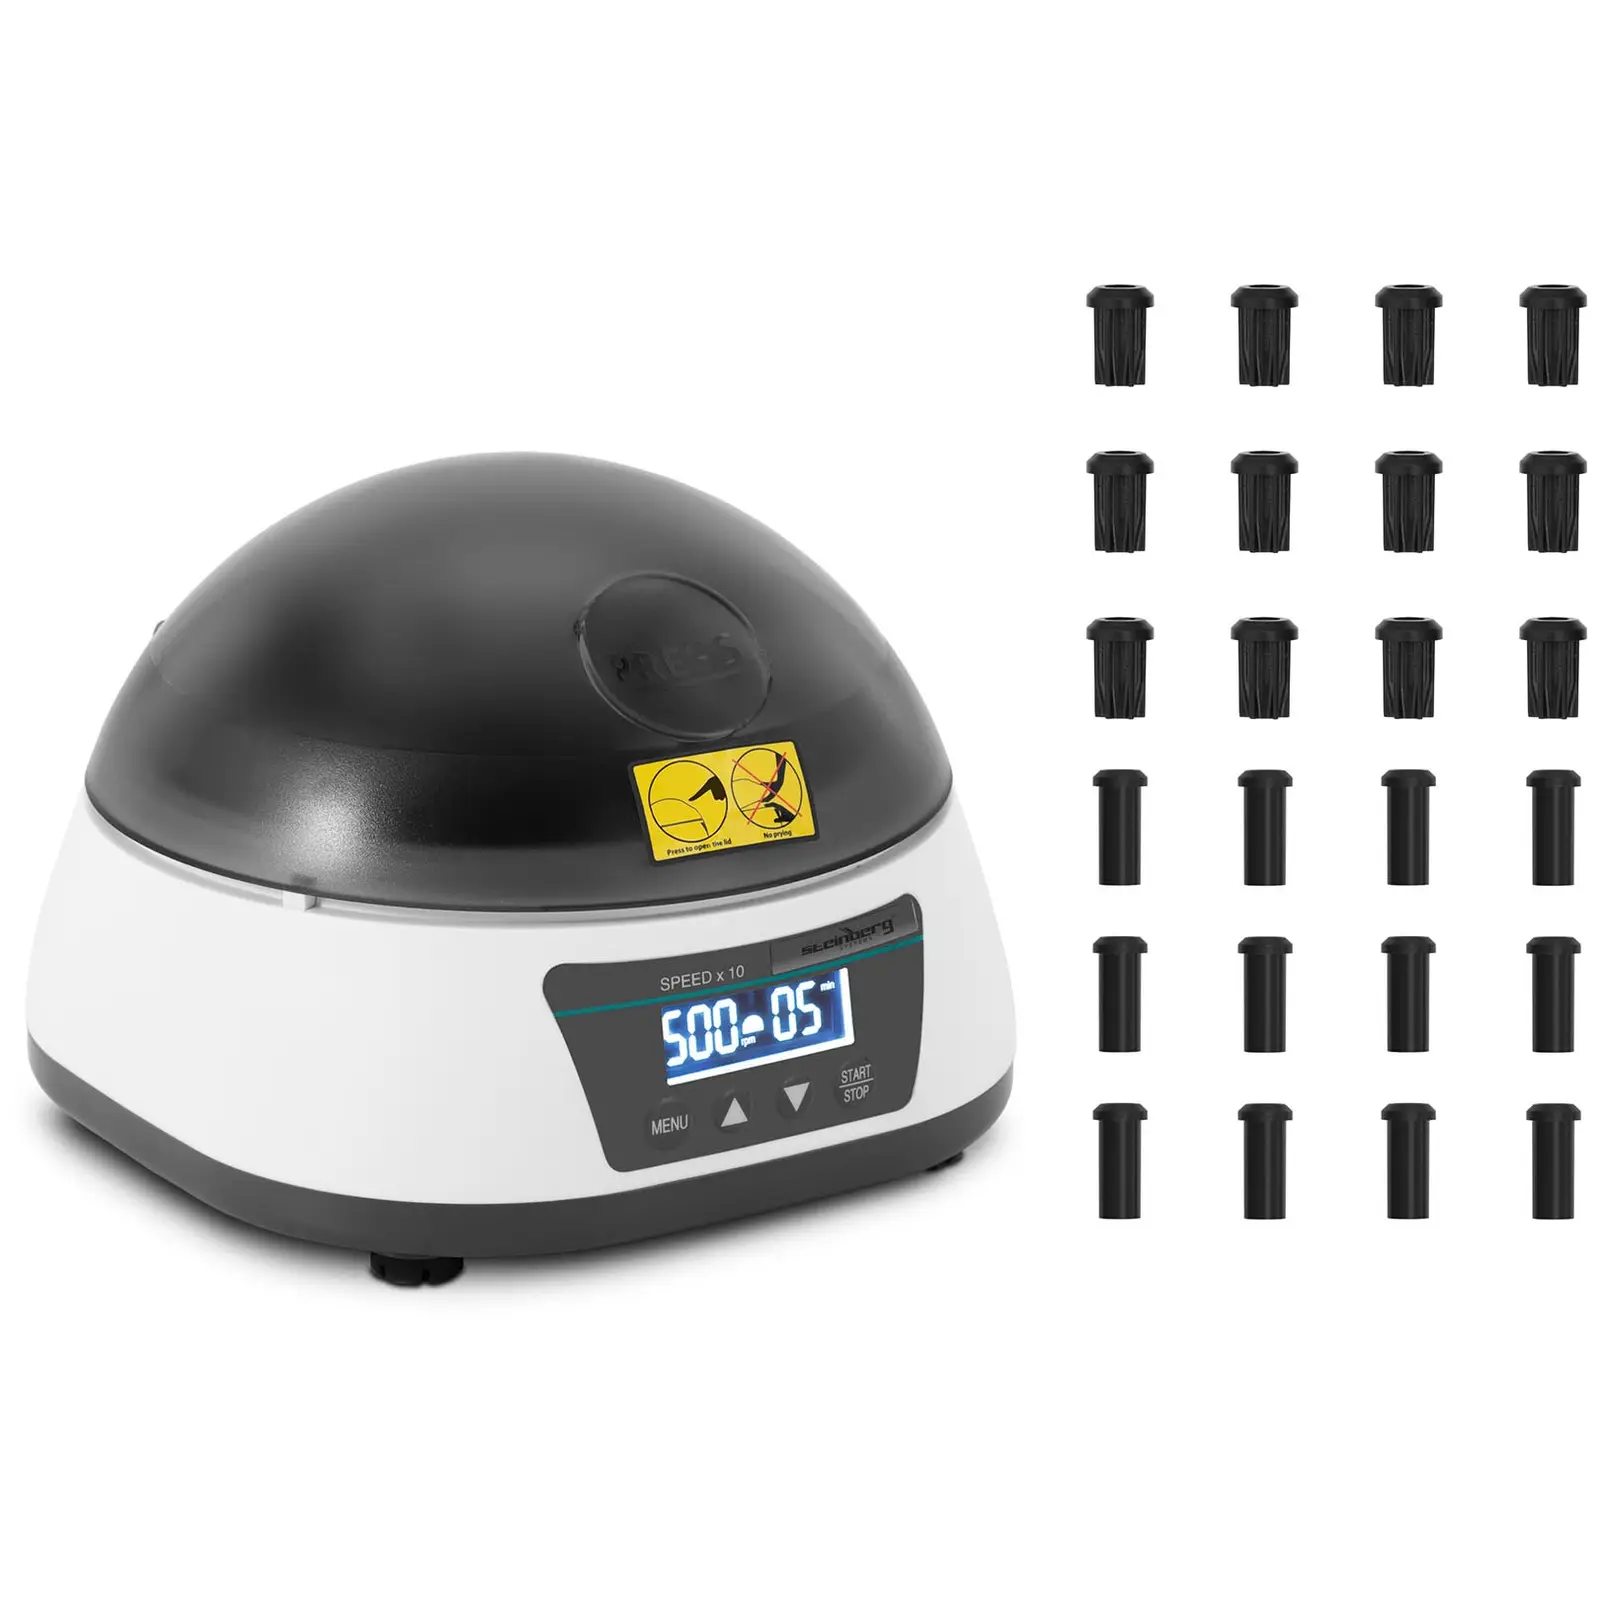 Centrifugadora de sobremesa - rotor 2 en 1 -  rpm - para 12 tubos / 4 tiras PCR - RZB 1258 xg